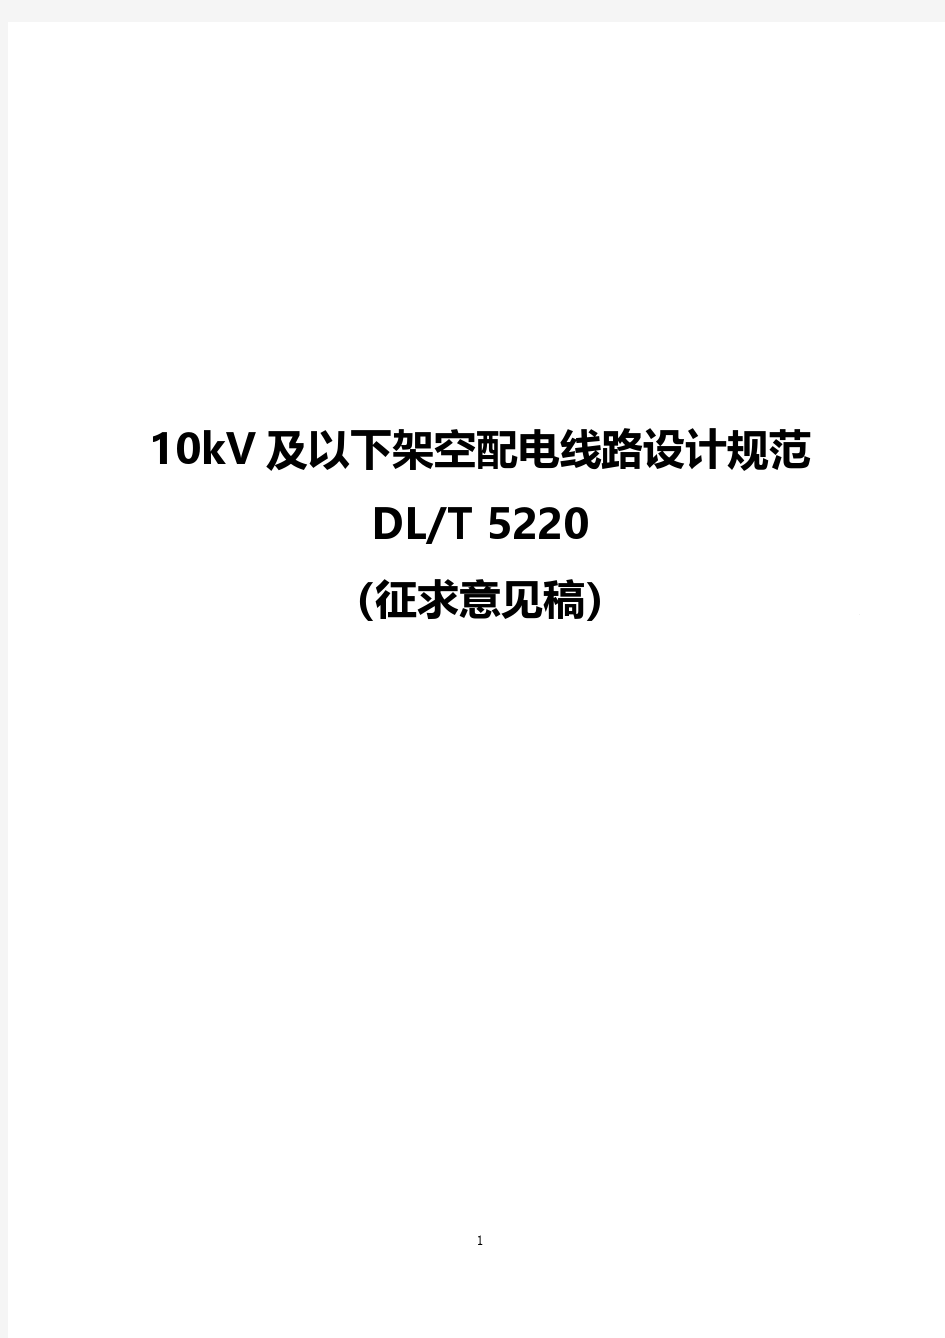 10kV及以下架空配电线路设计规范DLT5220(征求意见稿)